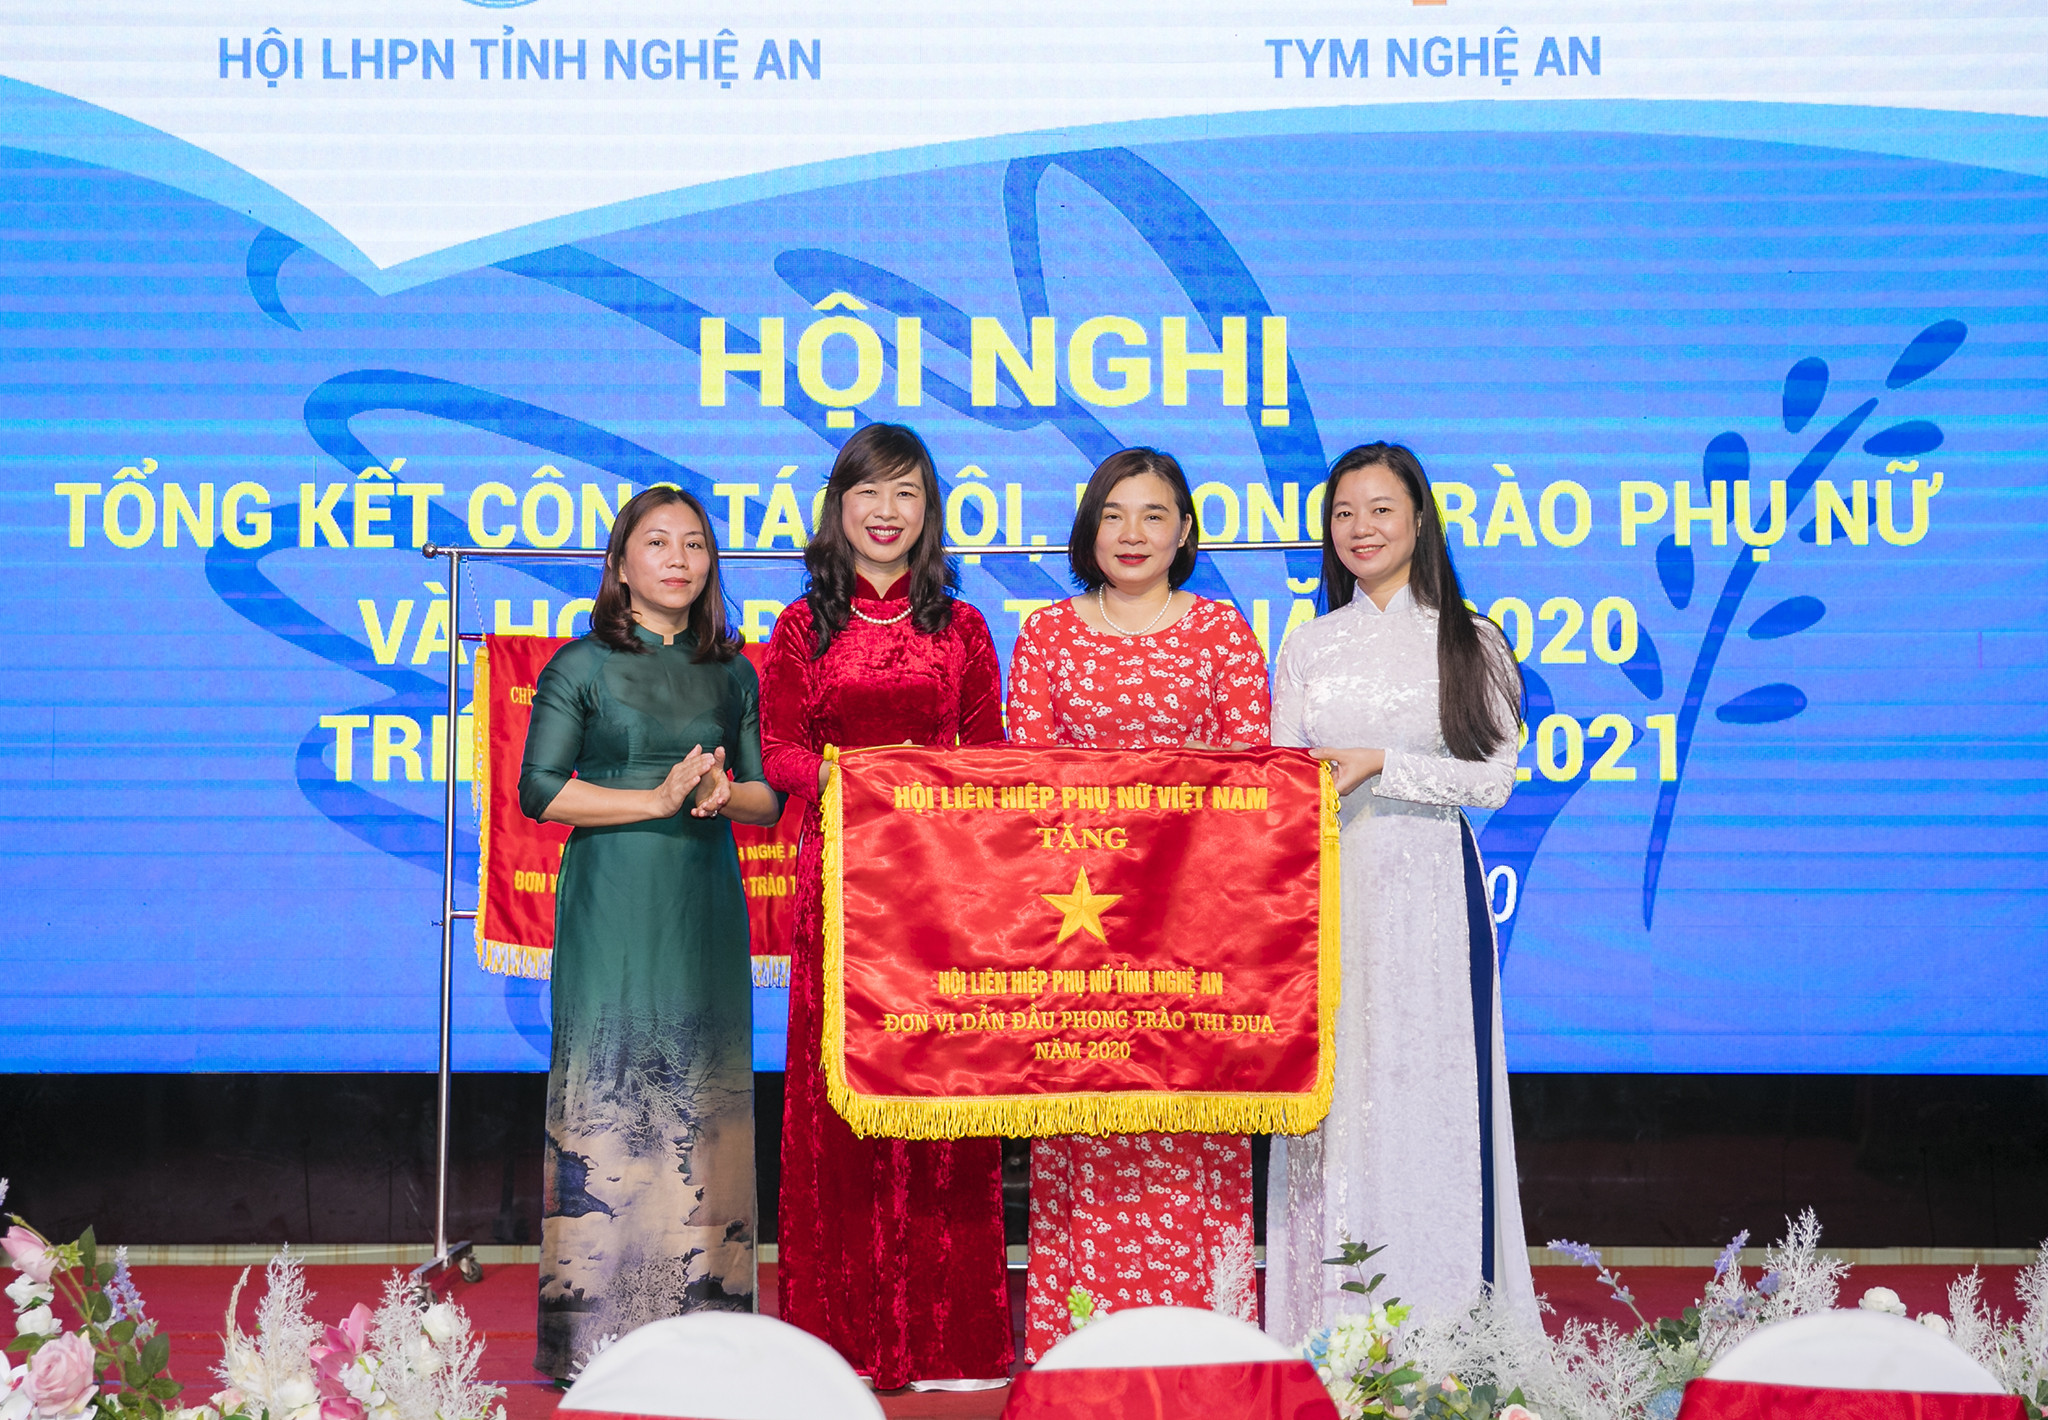 Đồng chí Nguyễn Thị Thu Huyền trao cờ thi đua của Hội LHPN Việt Nam cho Hội LHPN tỉnh. Ảnh: Đức Anh